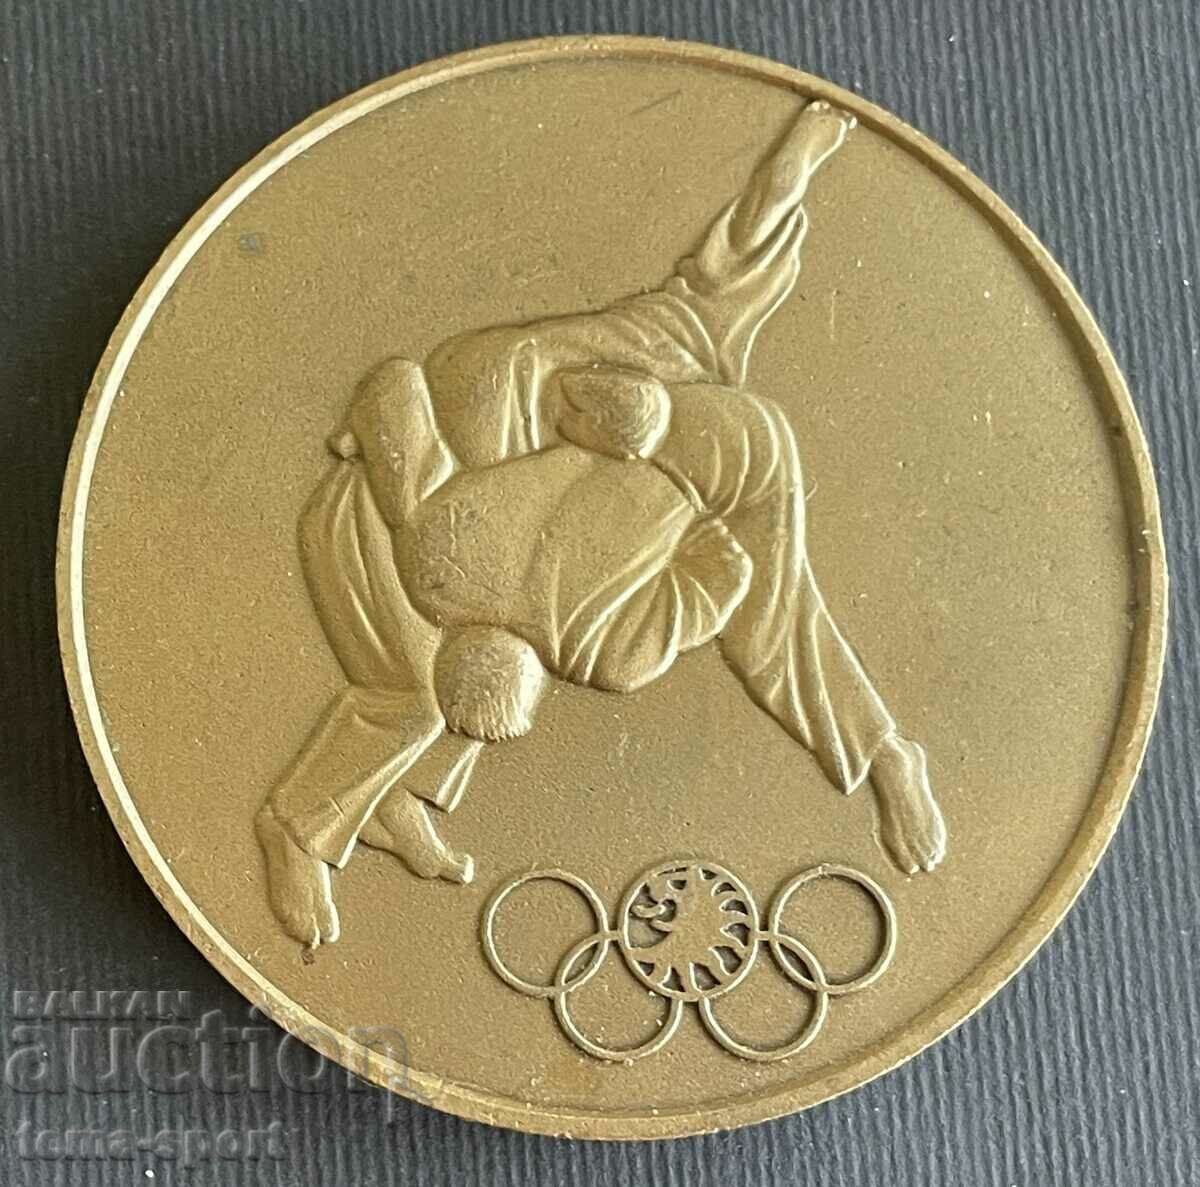 6 Turneul Olimpic de Judo din Bulgaria Lovech 1983